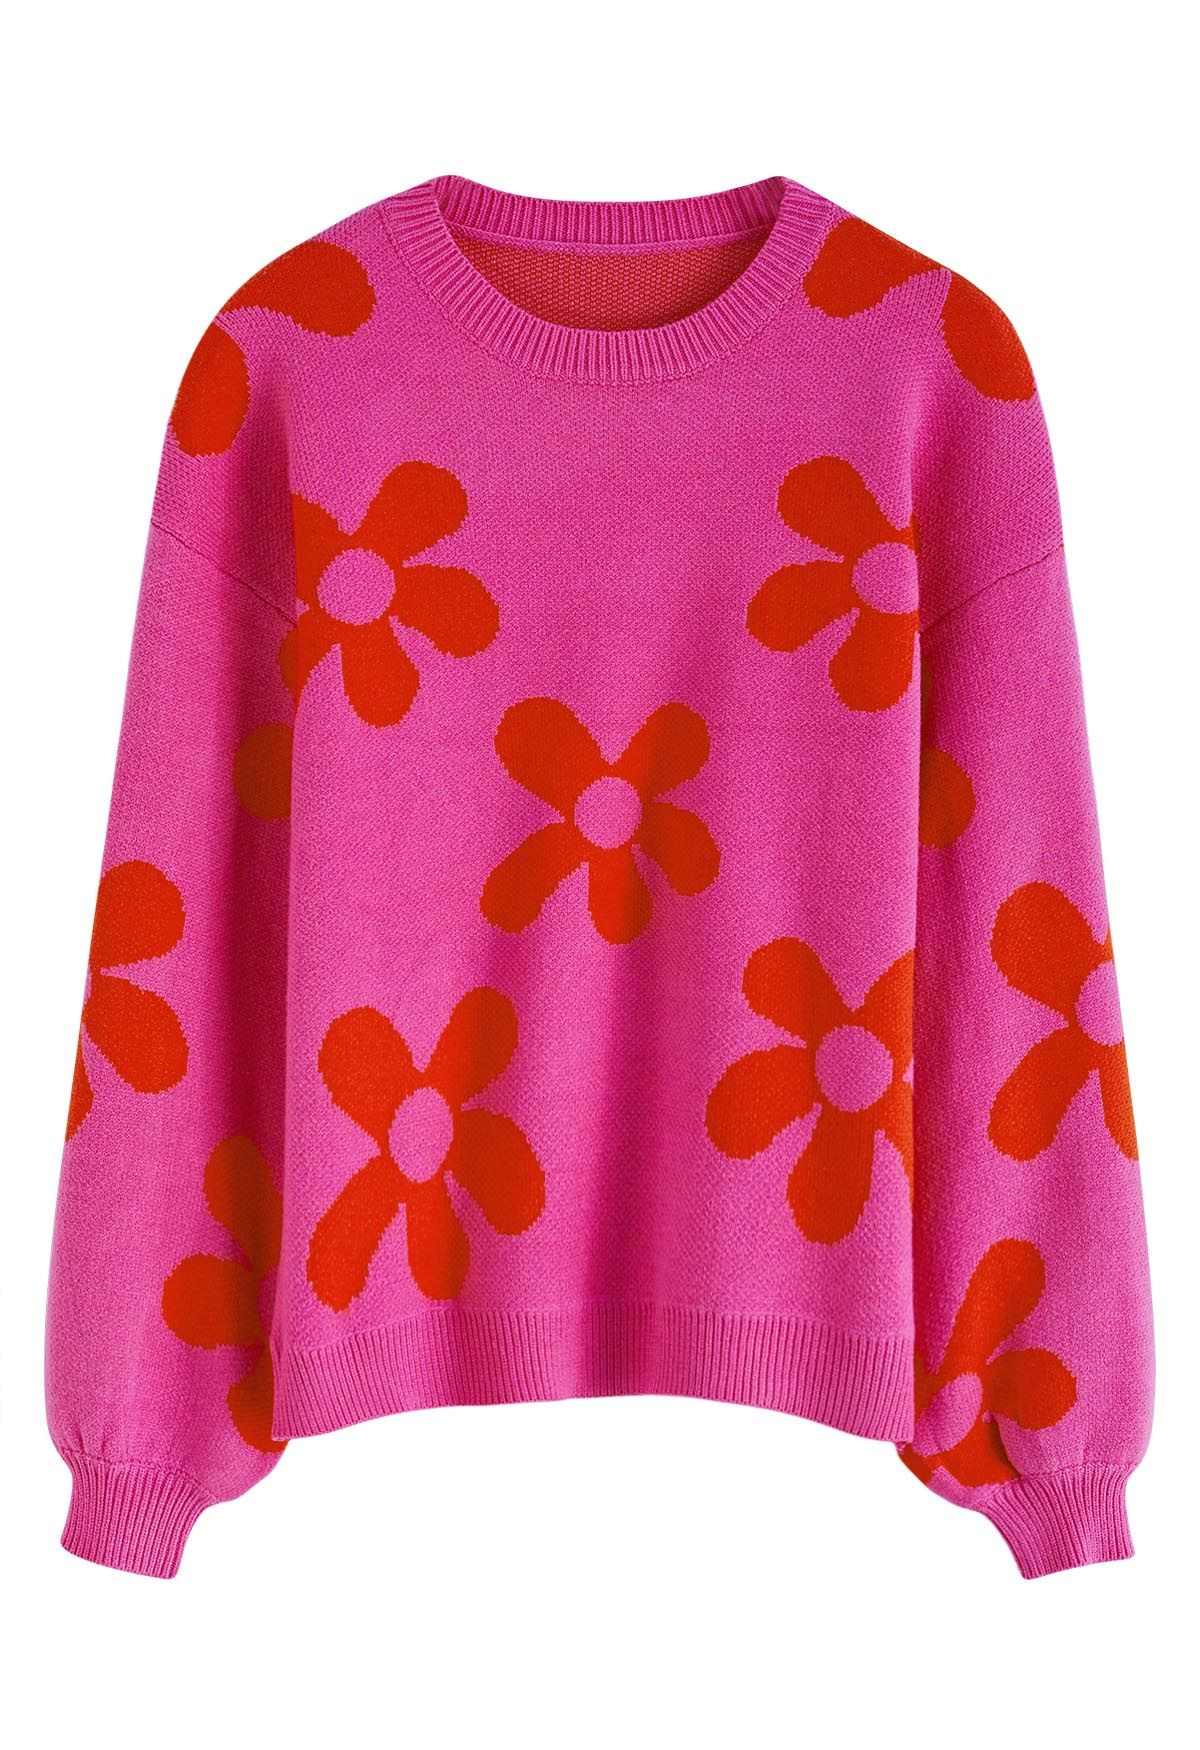 Cuteness Flowers Suéter de Punto con Cuello Redondo Cuadrado en Rosa Fuerte